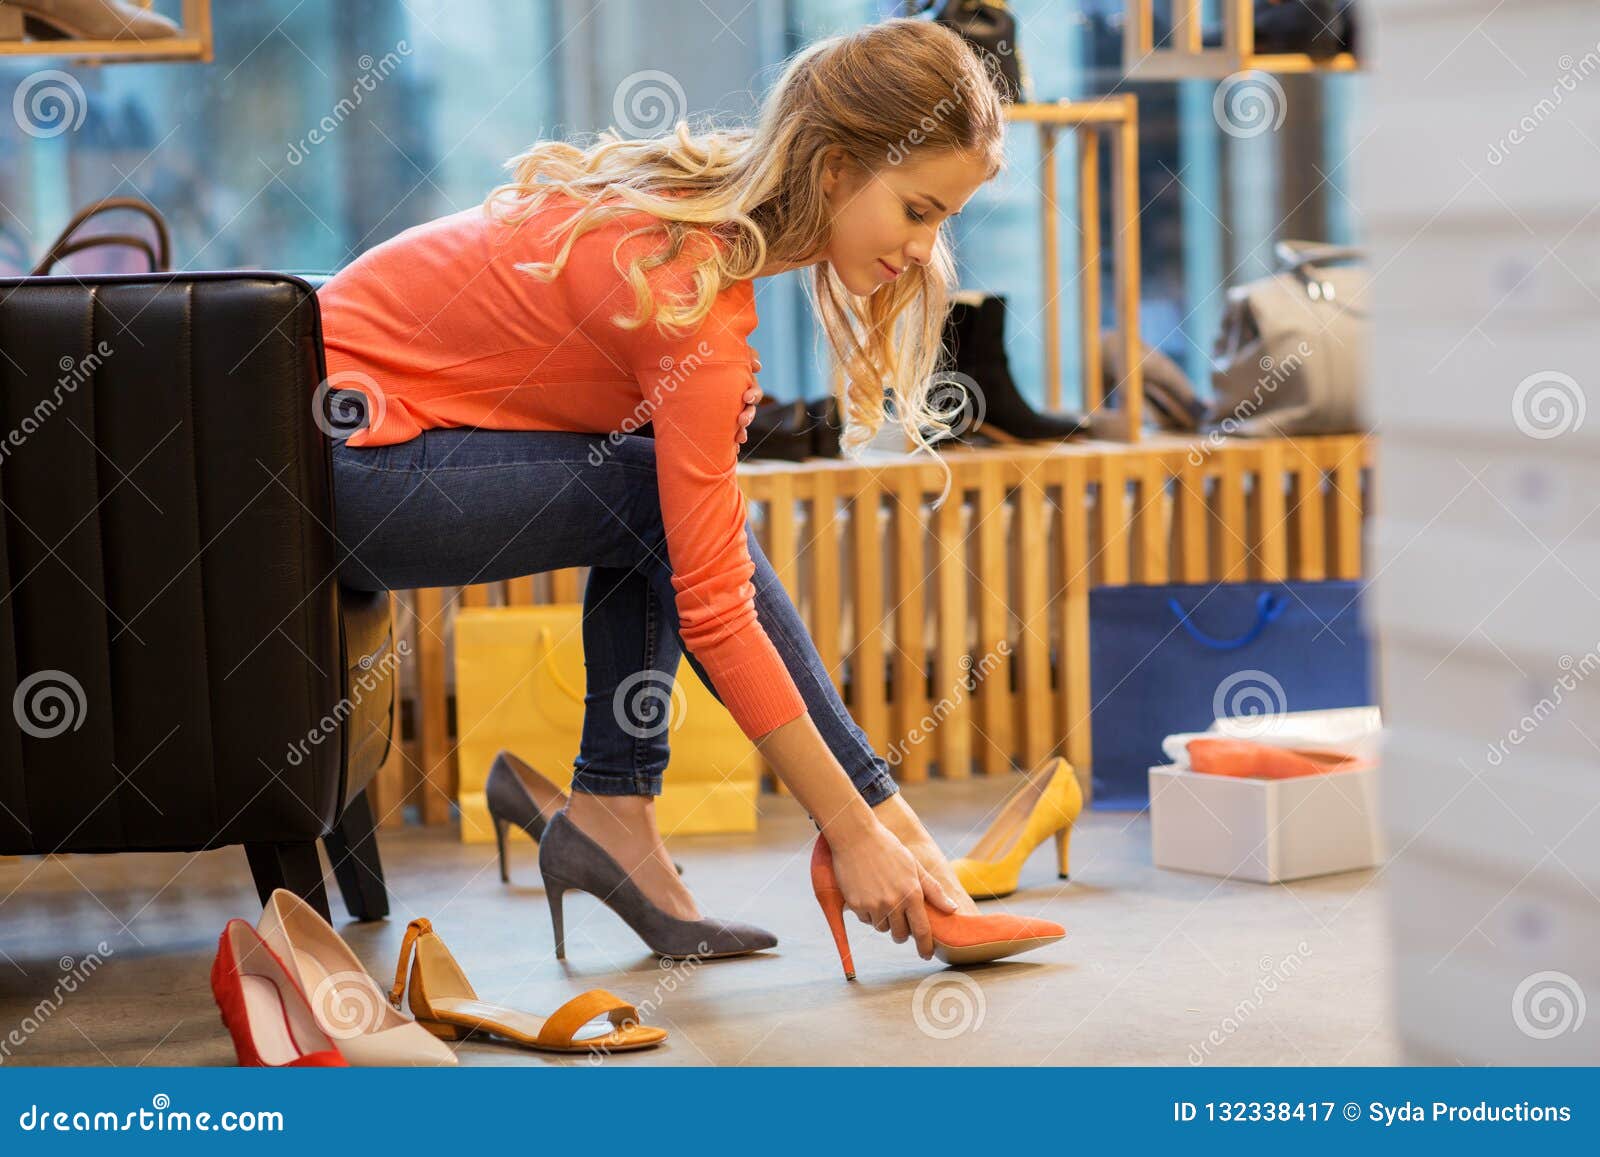 尝试高跟鞋的少妇在商店. 销售、购物、时尚和人概念-选择高跟鞋的少妇在商店